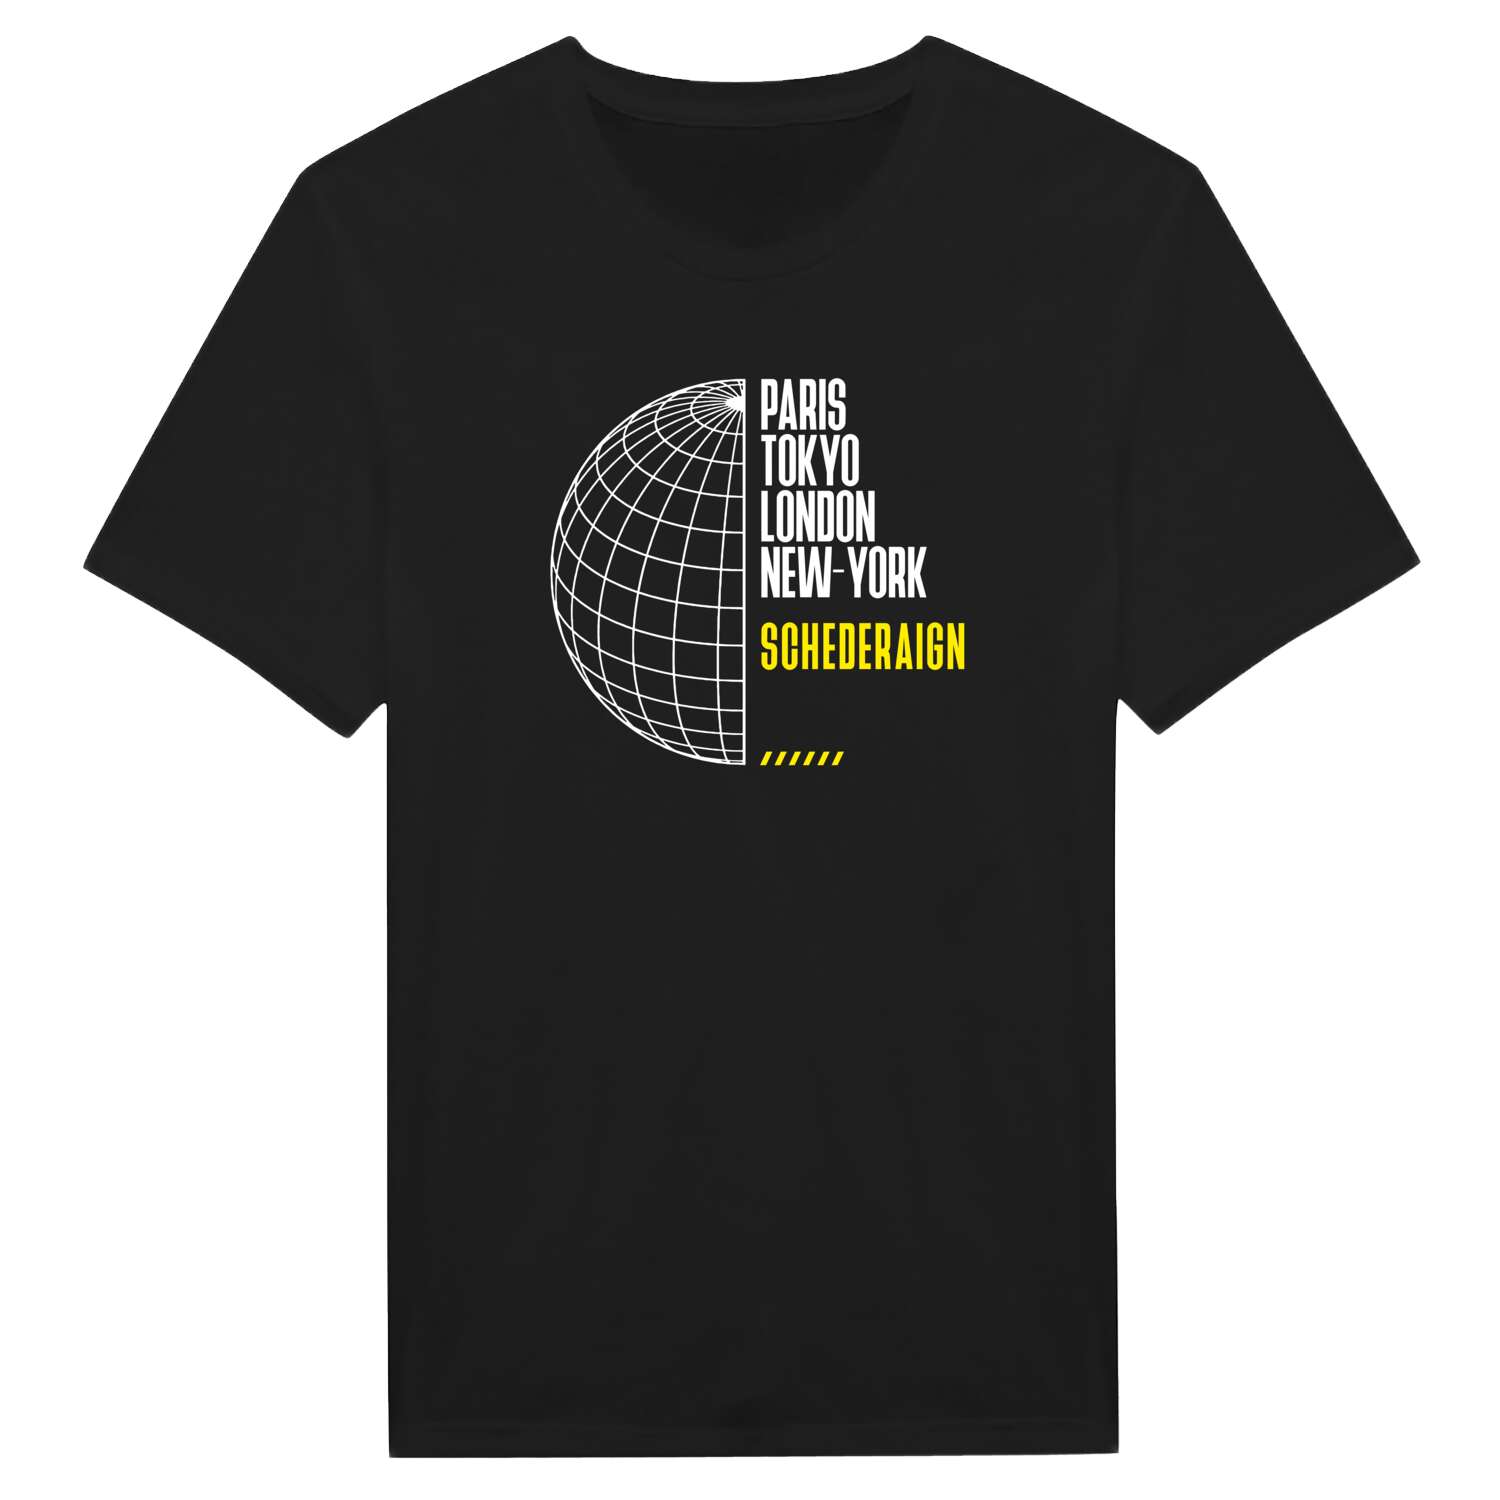 Schederaign T-Shirt »Paris Tokyo London«